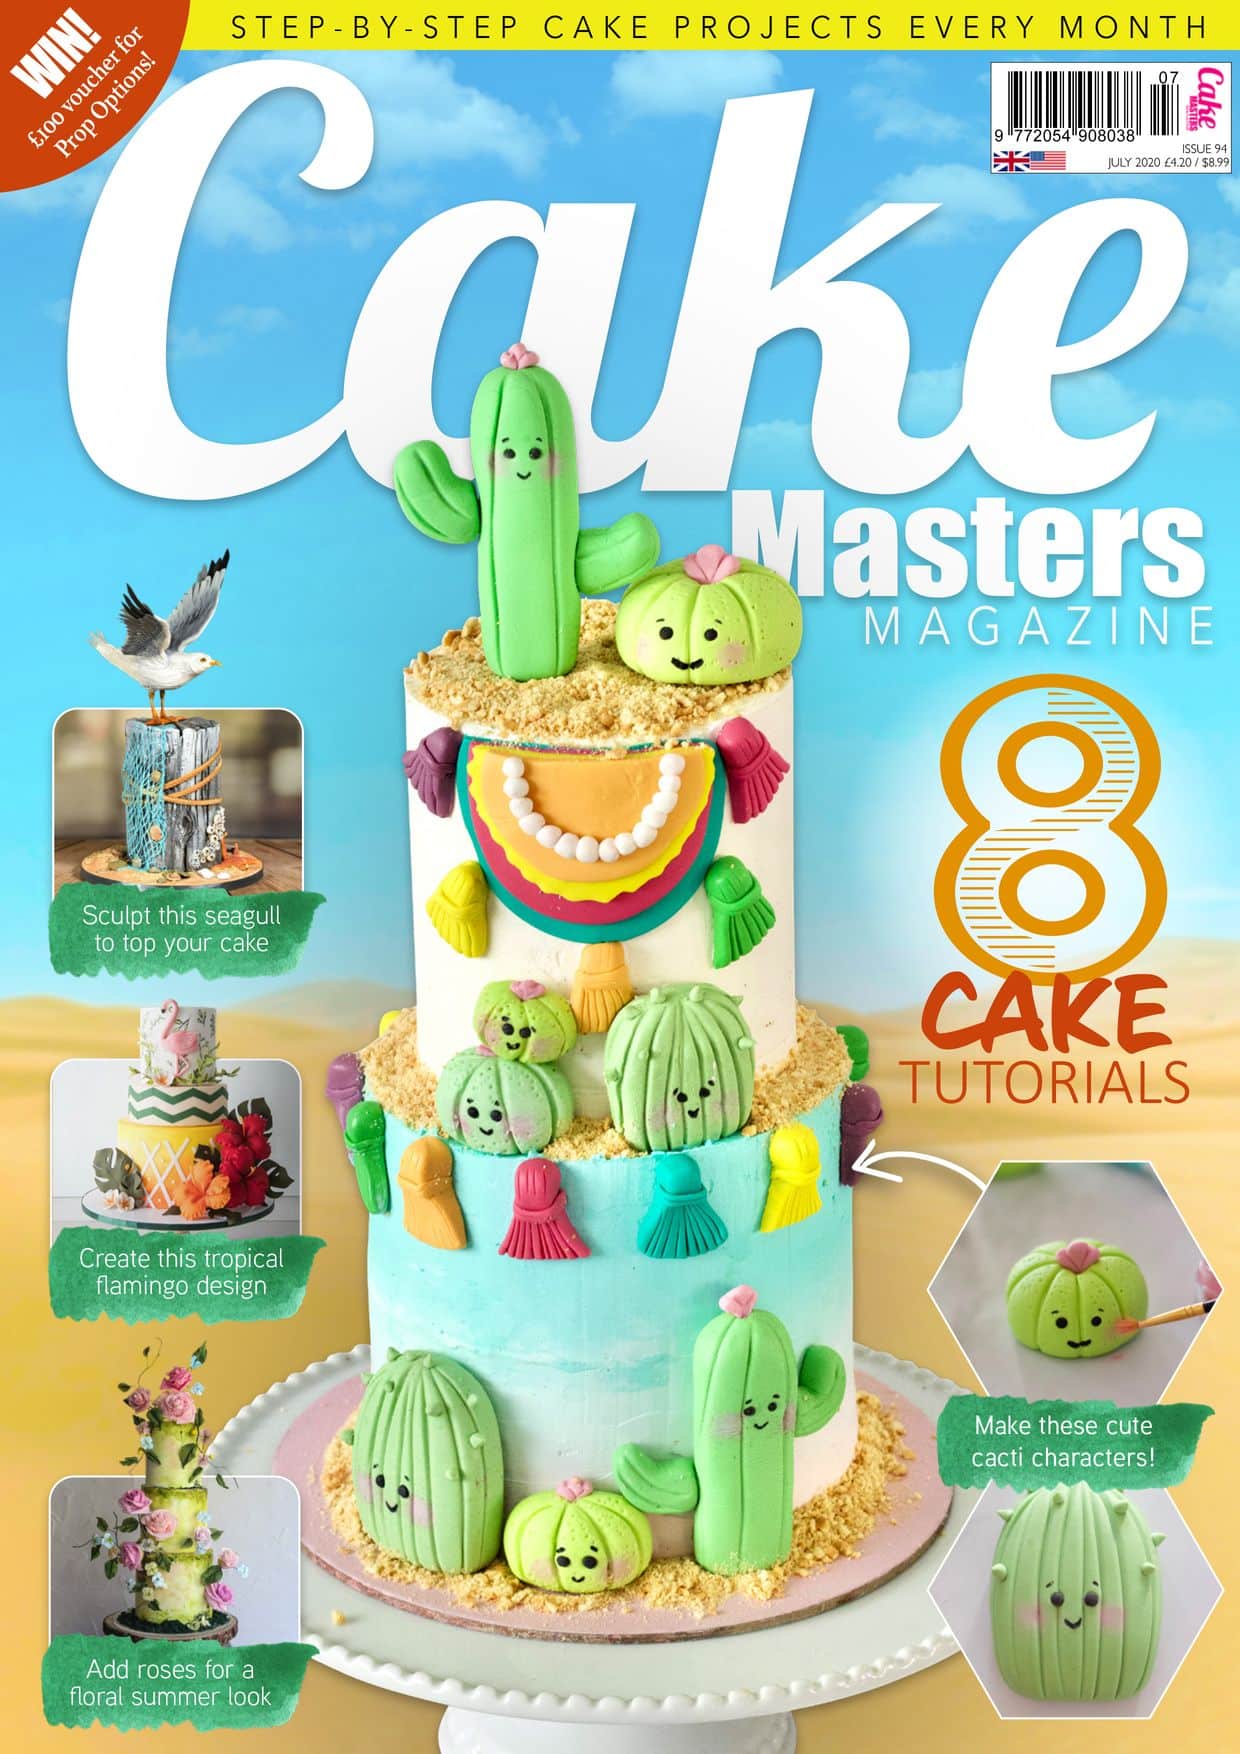 Cake Masters Magazine